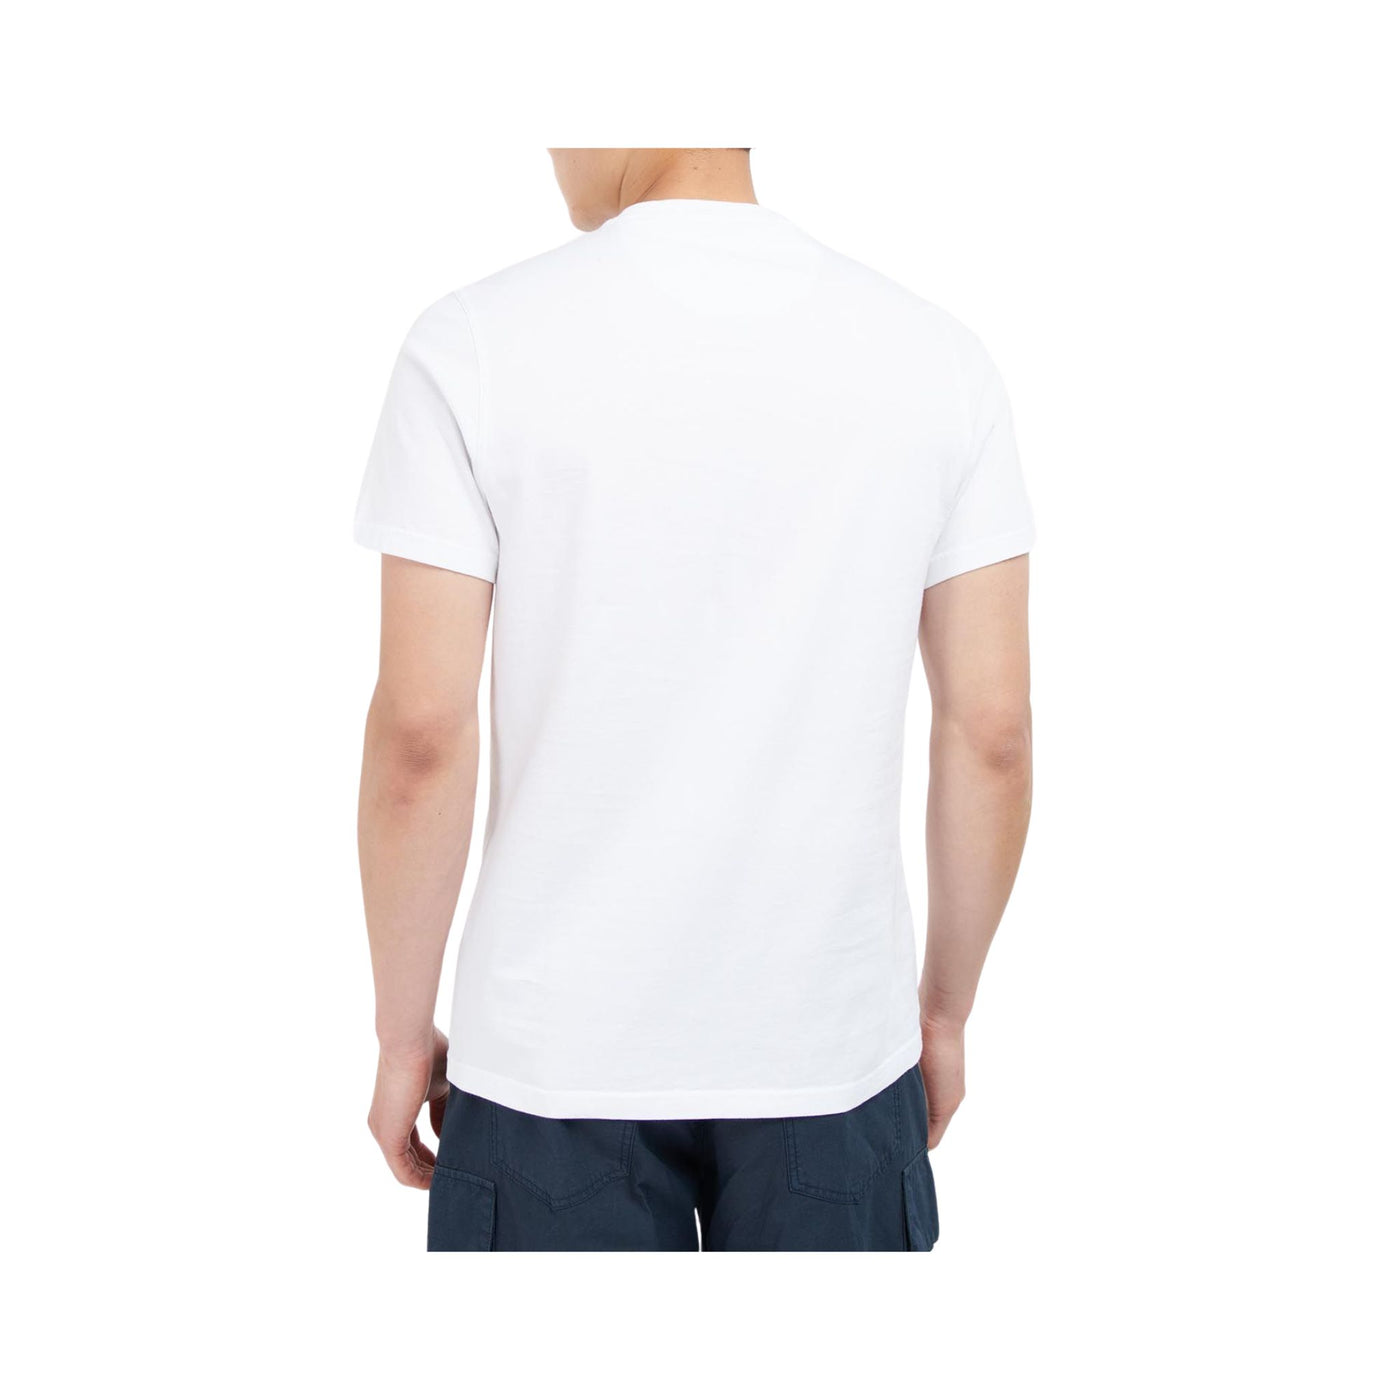 Men's solid color cotton T-shirt